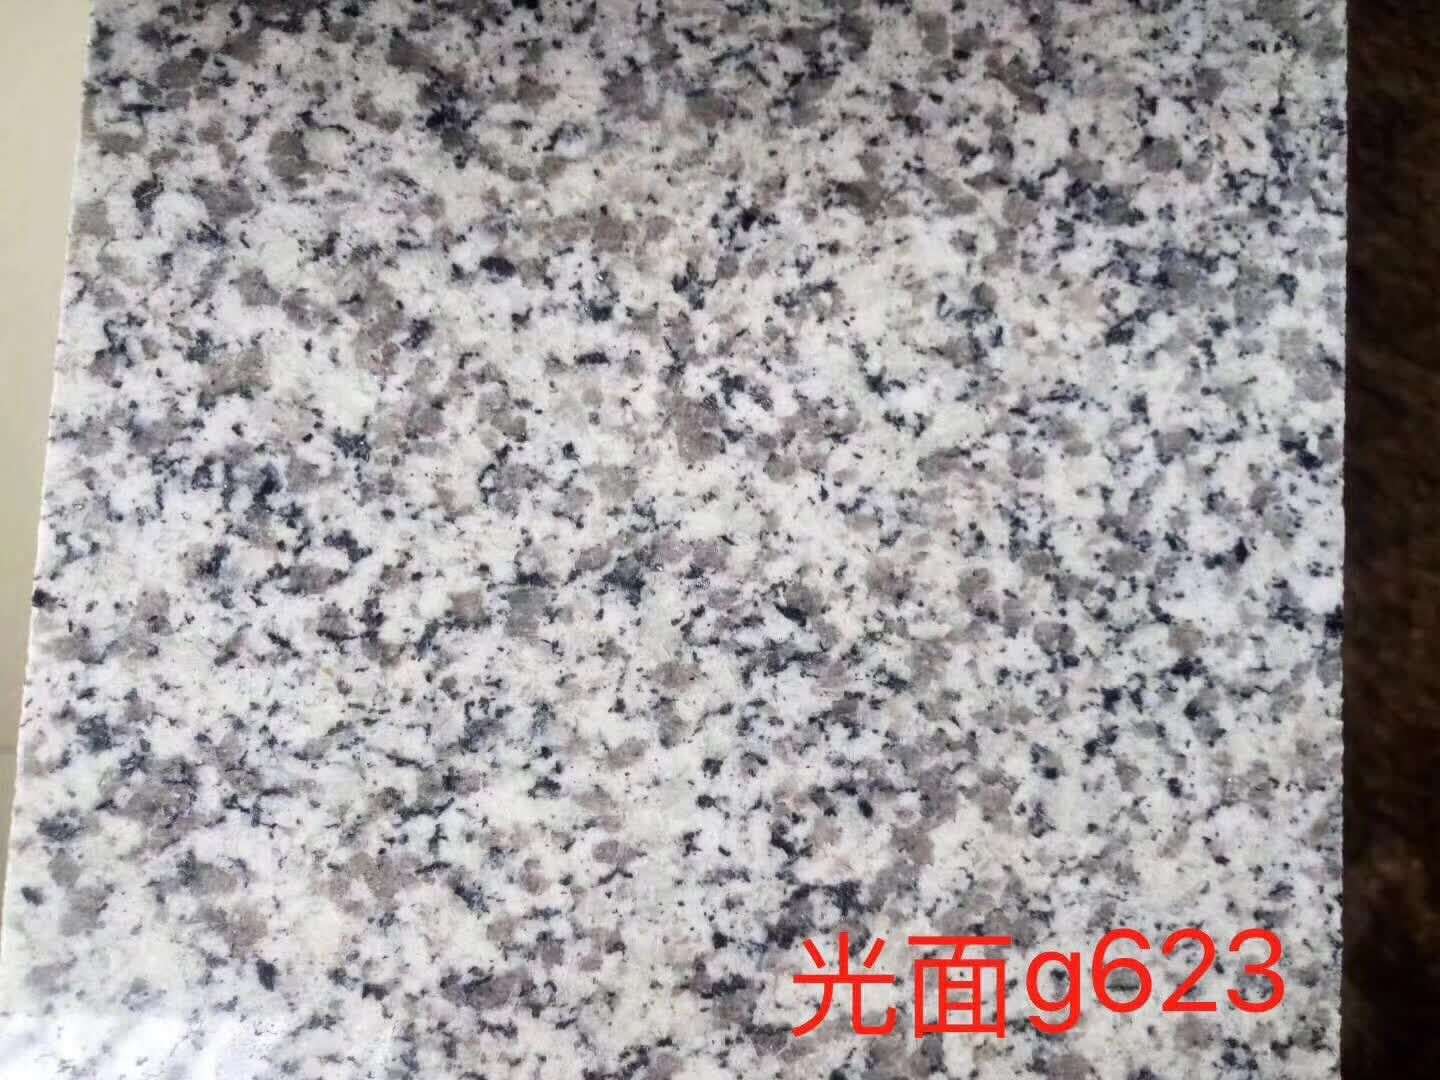 漳州市光面g623石材厂家光面g623石材厂家直销批发